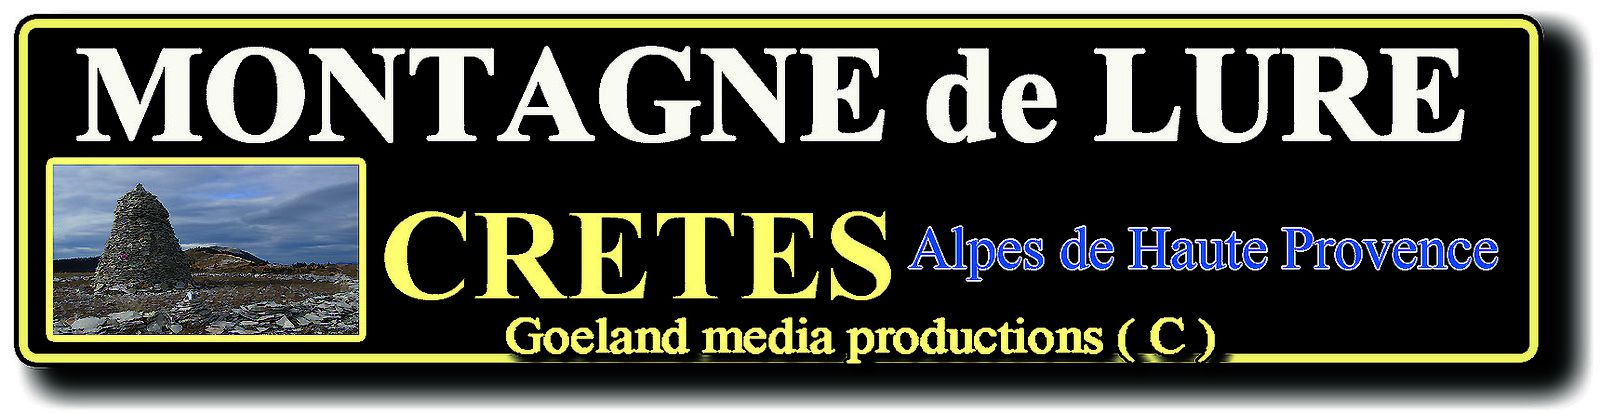 CRETES de le MOTAGNE de LURE - Alpes de Haute Provence - LUBERON - Alpes du SUD